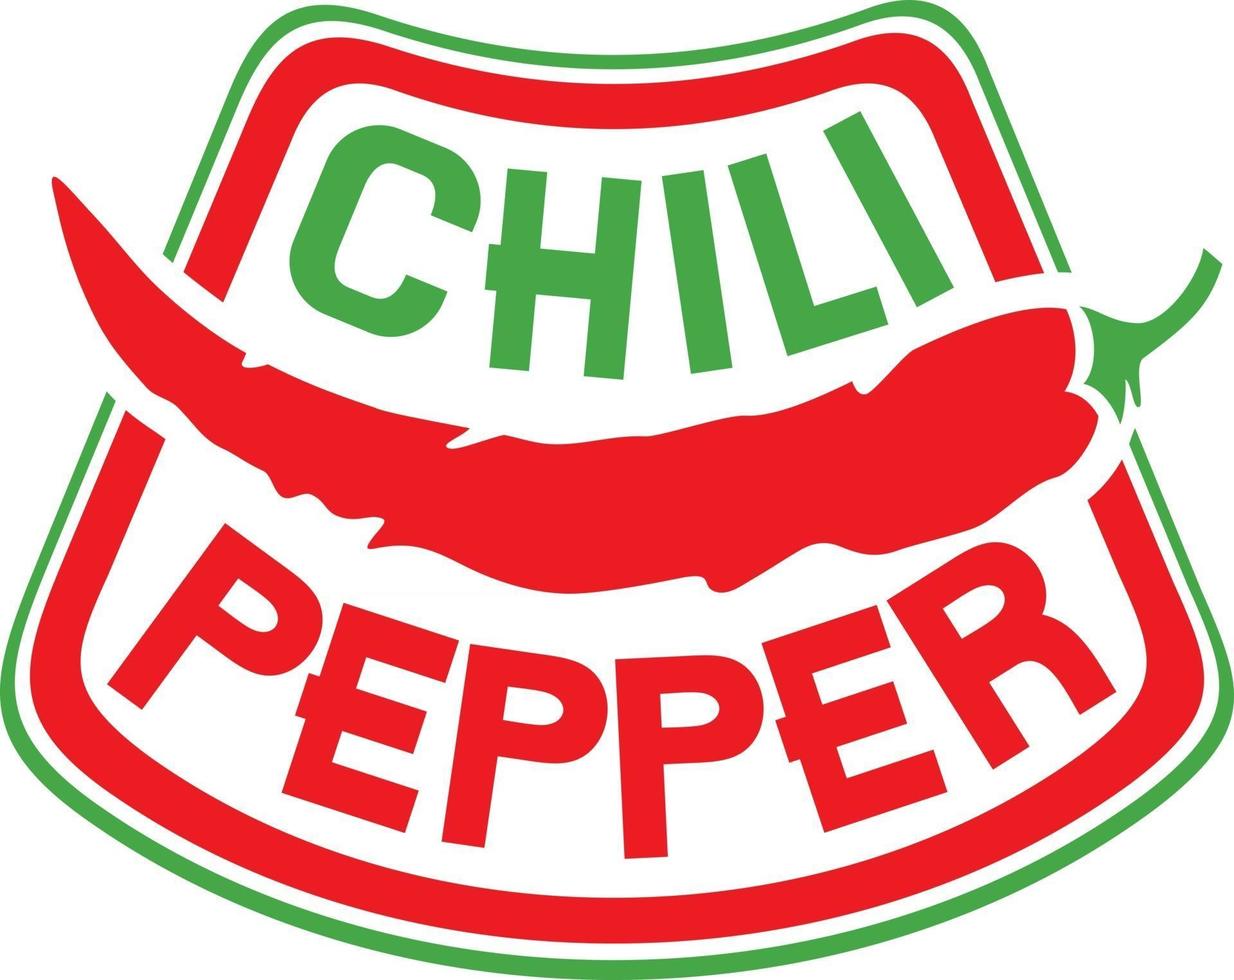 Chili Pepper Label vector